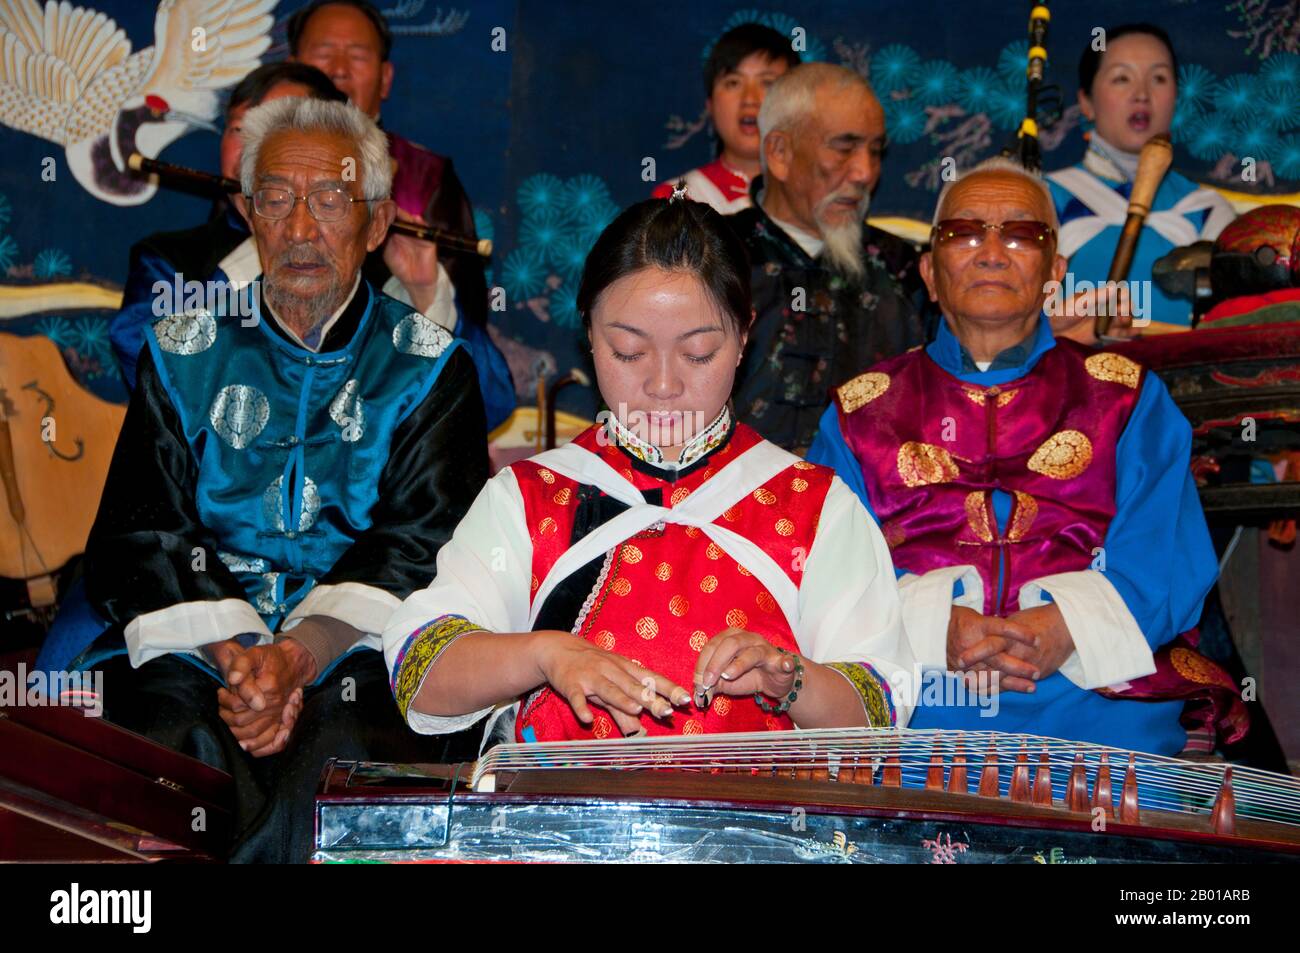 China: Eine Frau pflückt einen Guzheng, das Naxi (Nakhi) Folk Orchestra, die Naxi-Orchesterhalle, die Altstadt von Lijiang, Provinz Yunnan. Naxi-Musik ist 500 Jahre alt und hat mit ihrer Mischung aus literarischen Texten, poetischen Themen und musikalischen Stilen der Tang-, Song- und Yuan-Dynastien sowie einigen tibetischen Einflüssen einen eigenen, einzigartigen Stil und Züge entwickelt. Es gibt drei Hauptstile: Baisha, Dongjing und Huangjing, alle mit traditionellen chinesischen Instrumenten. Die Naxi oder Nakhi sind eine ethnische Gruppe, die am Fuße des Himalaya im Nordwesten der Provinz Yunnan lebt. Stockfoto